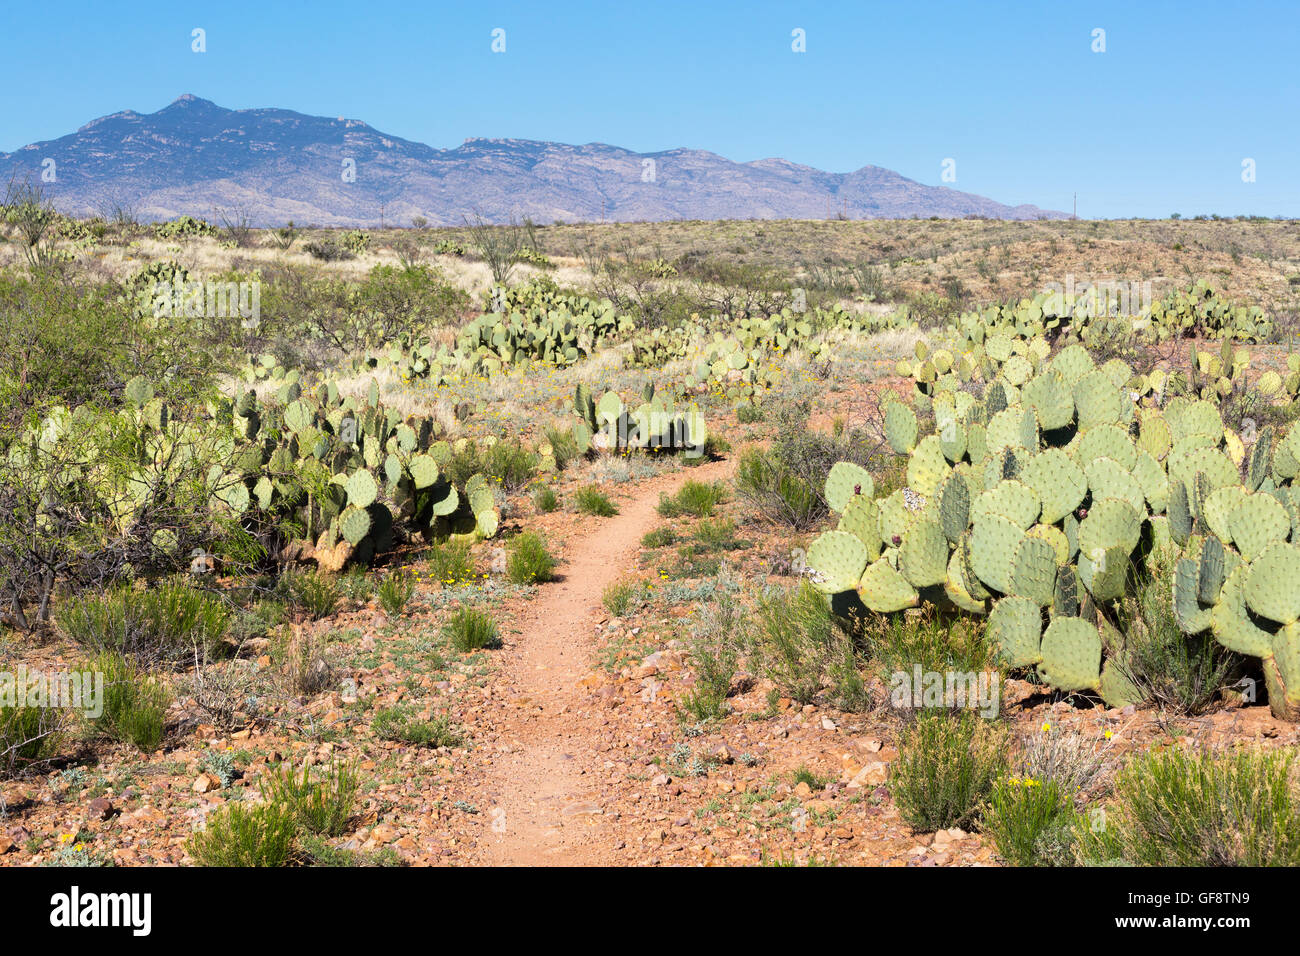 L'Arizona Trail qui serpente dans la végétation du désert de Sonoran. Las Cienegas National Conservation Area, Arizona Banque D'Images